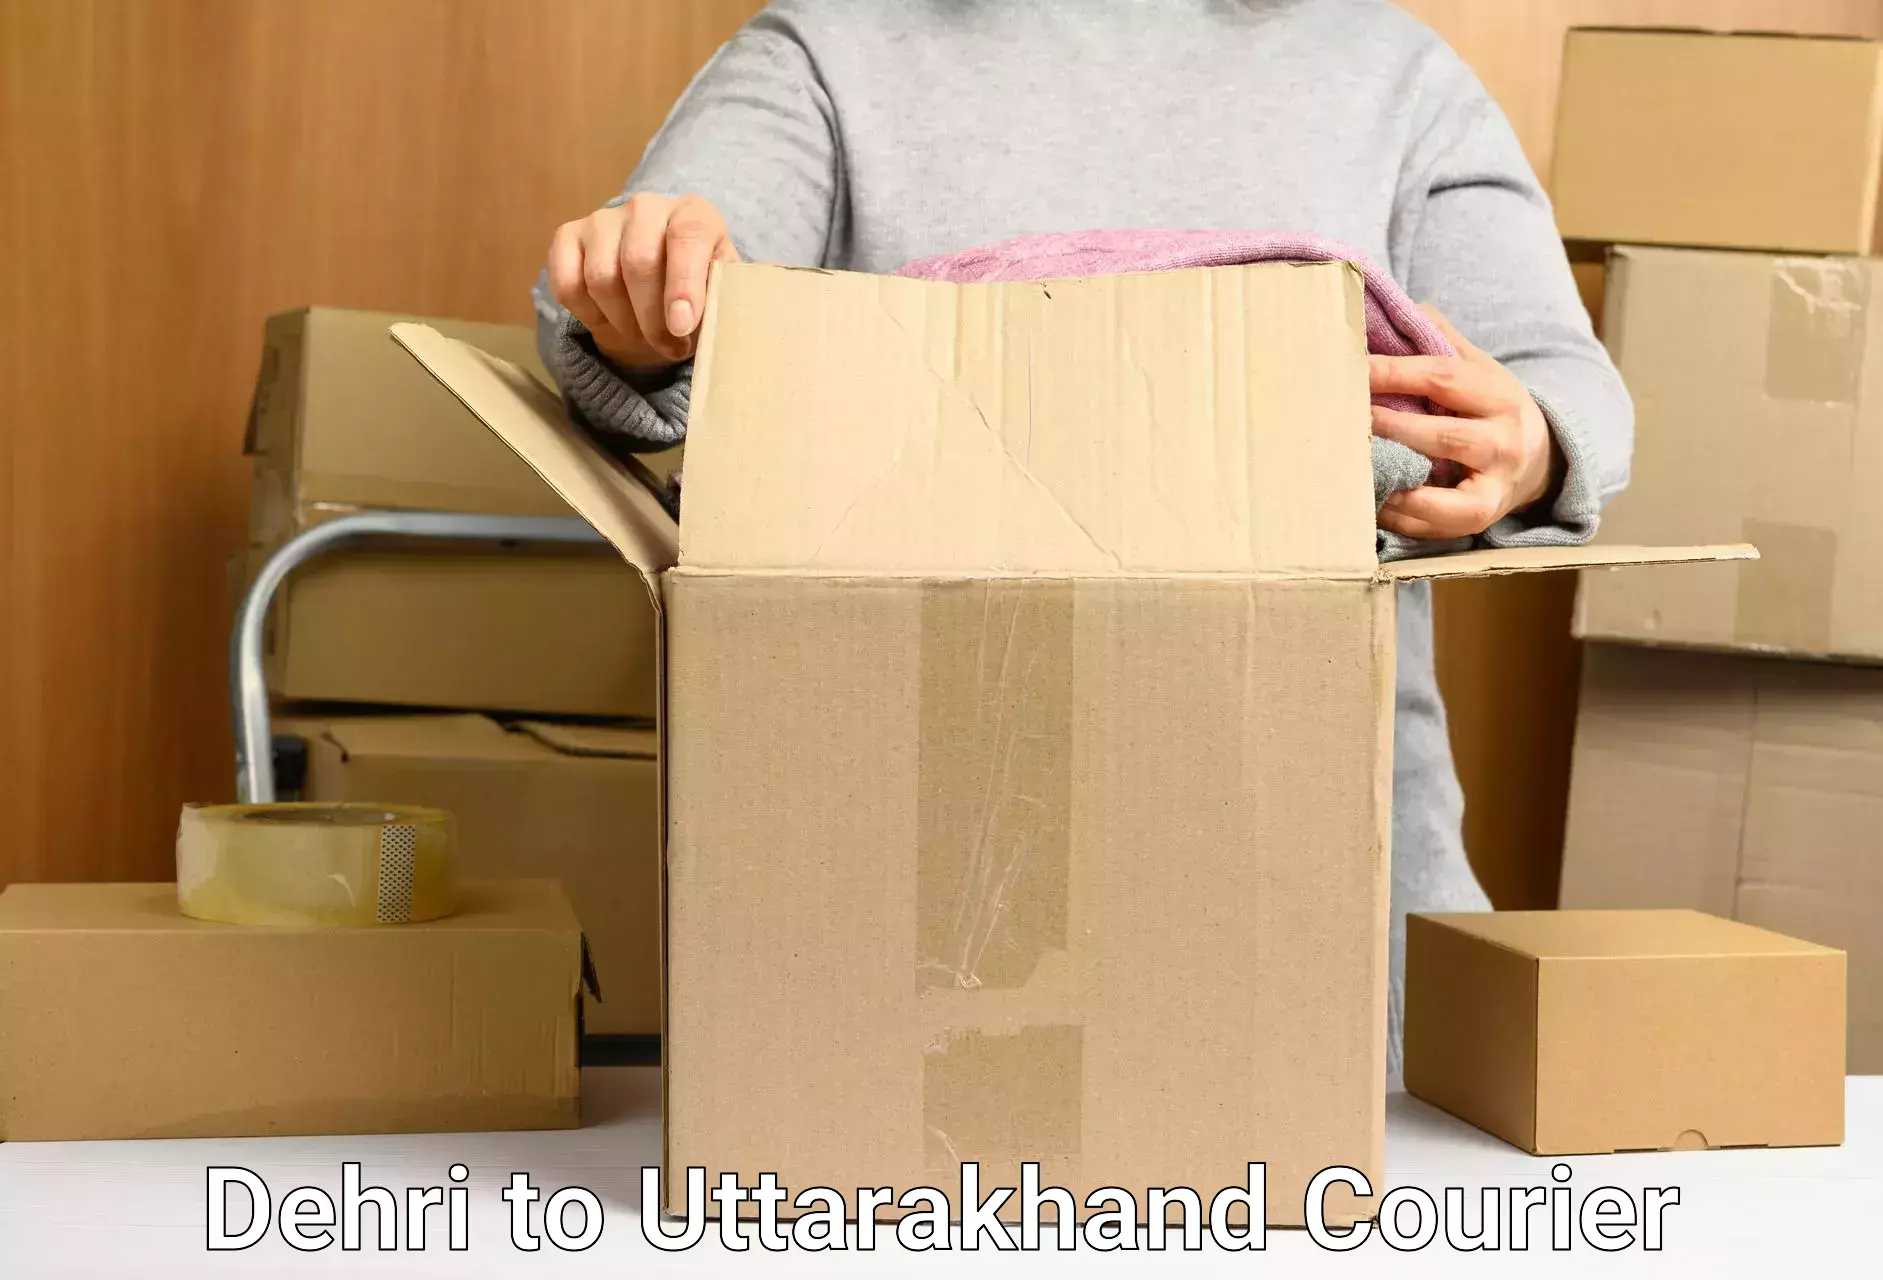 Courier service comparison Dehri to Uttarakhand